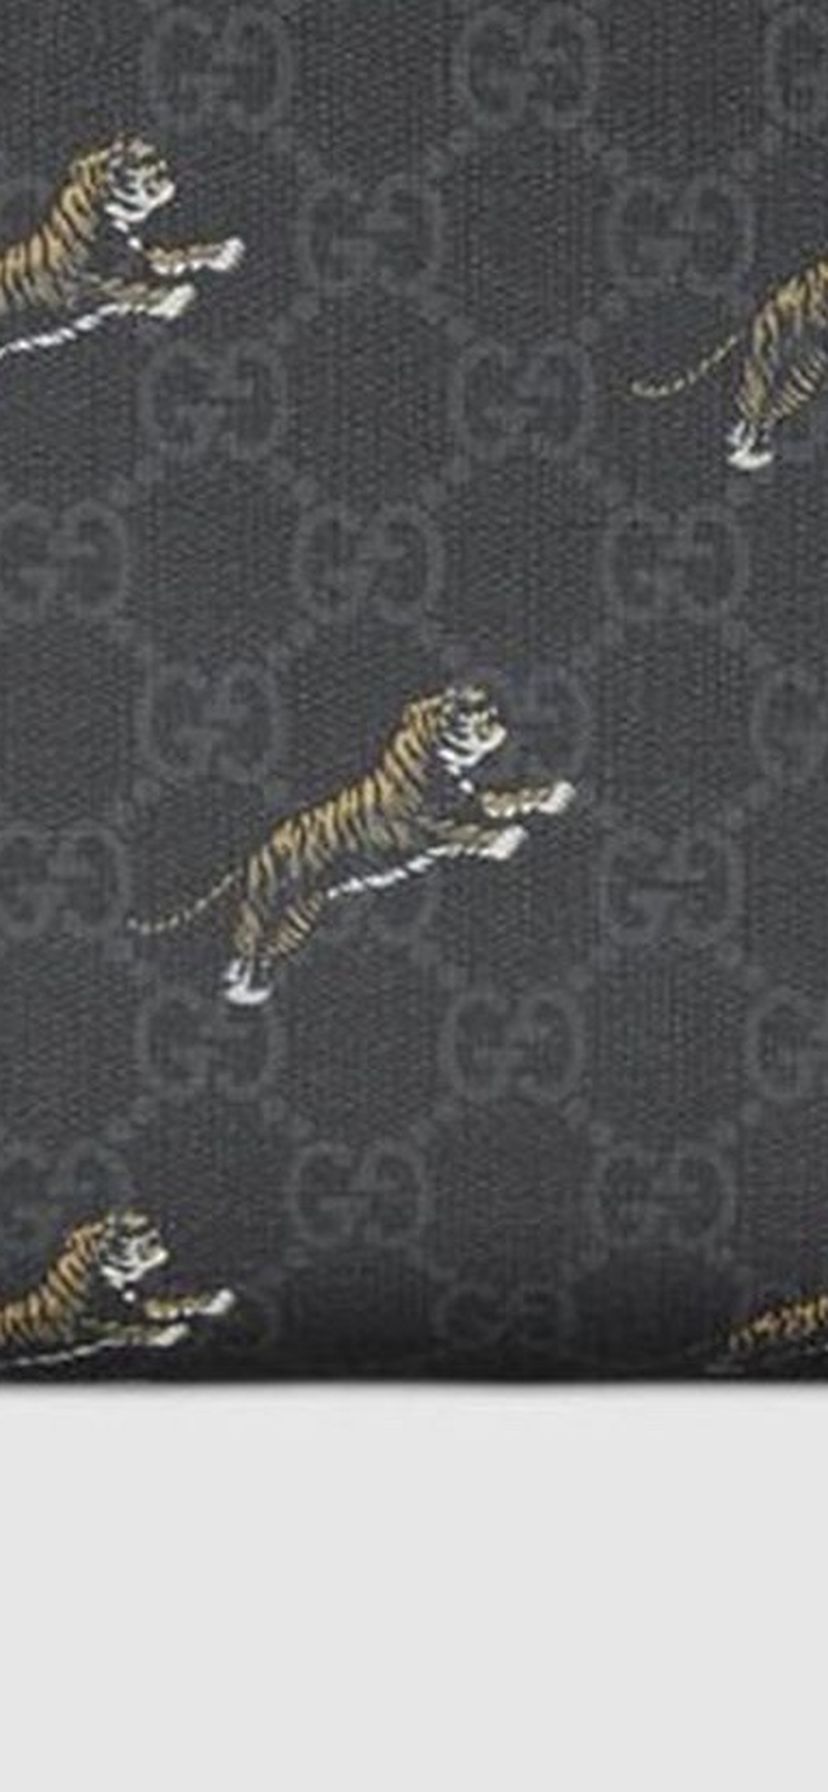 Gucci Supreme Tiger Messenger Bag